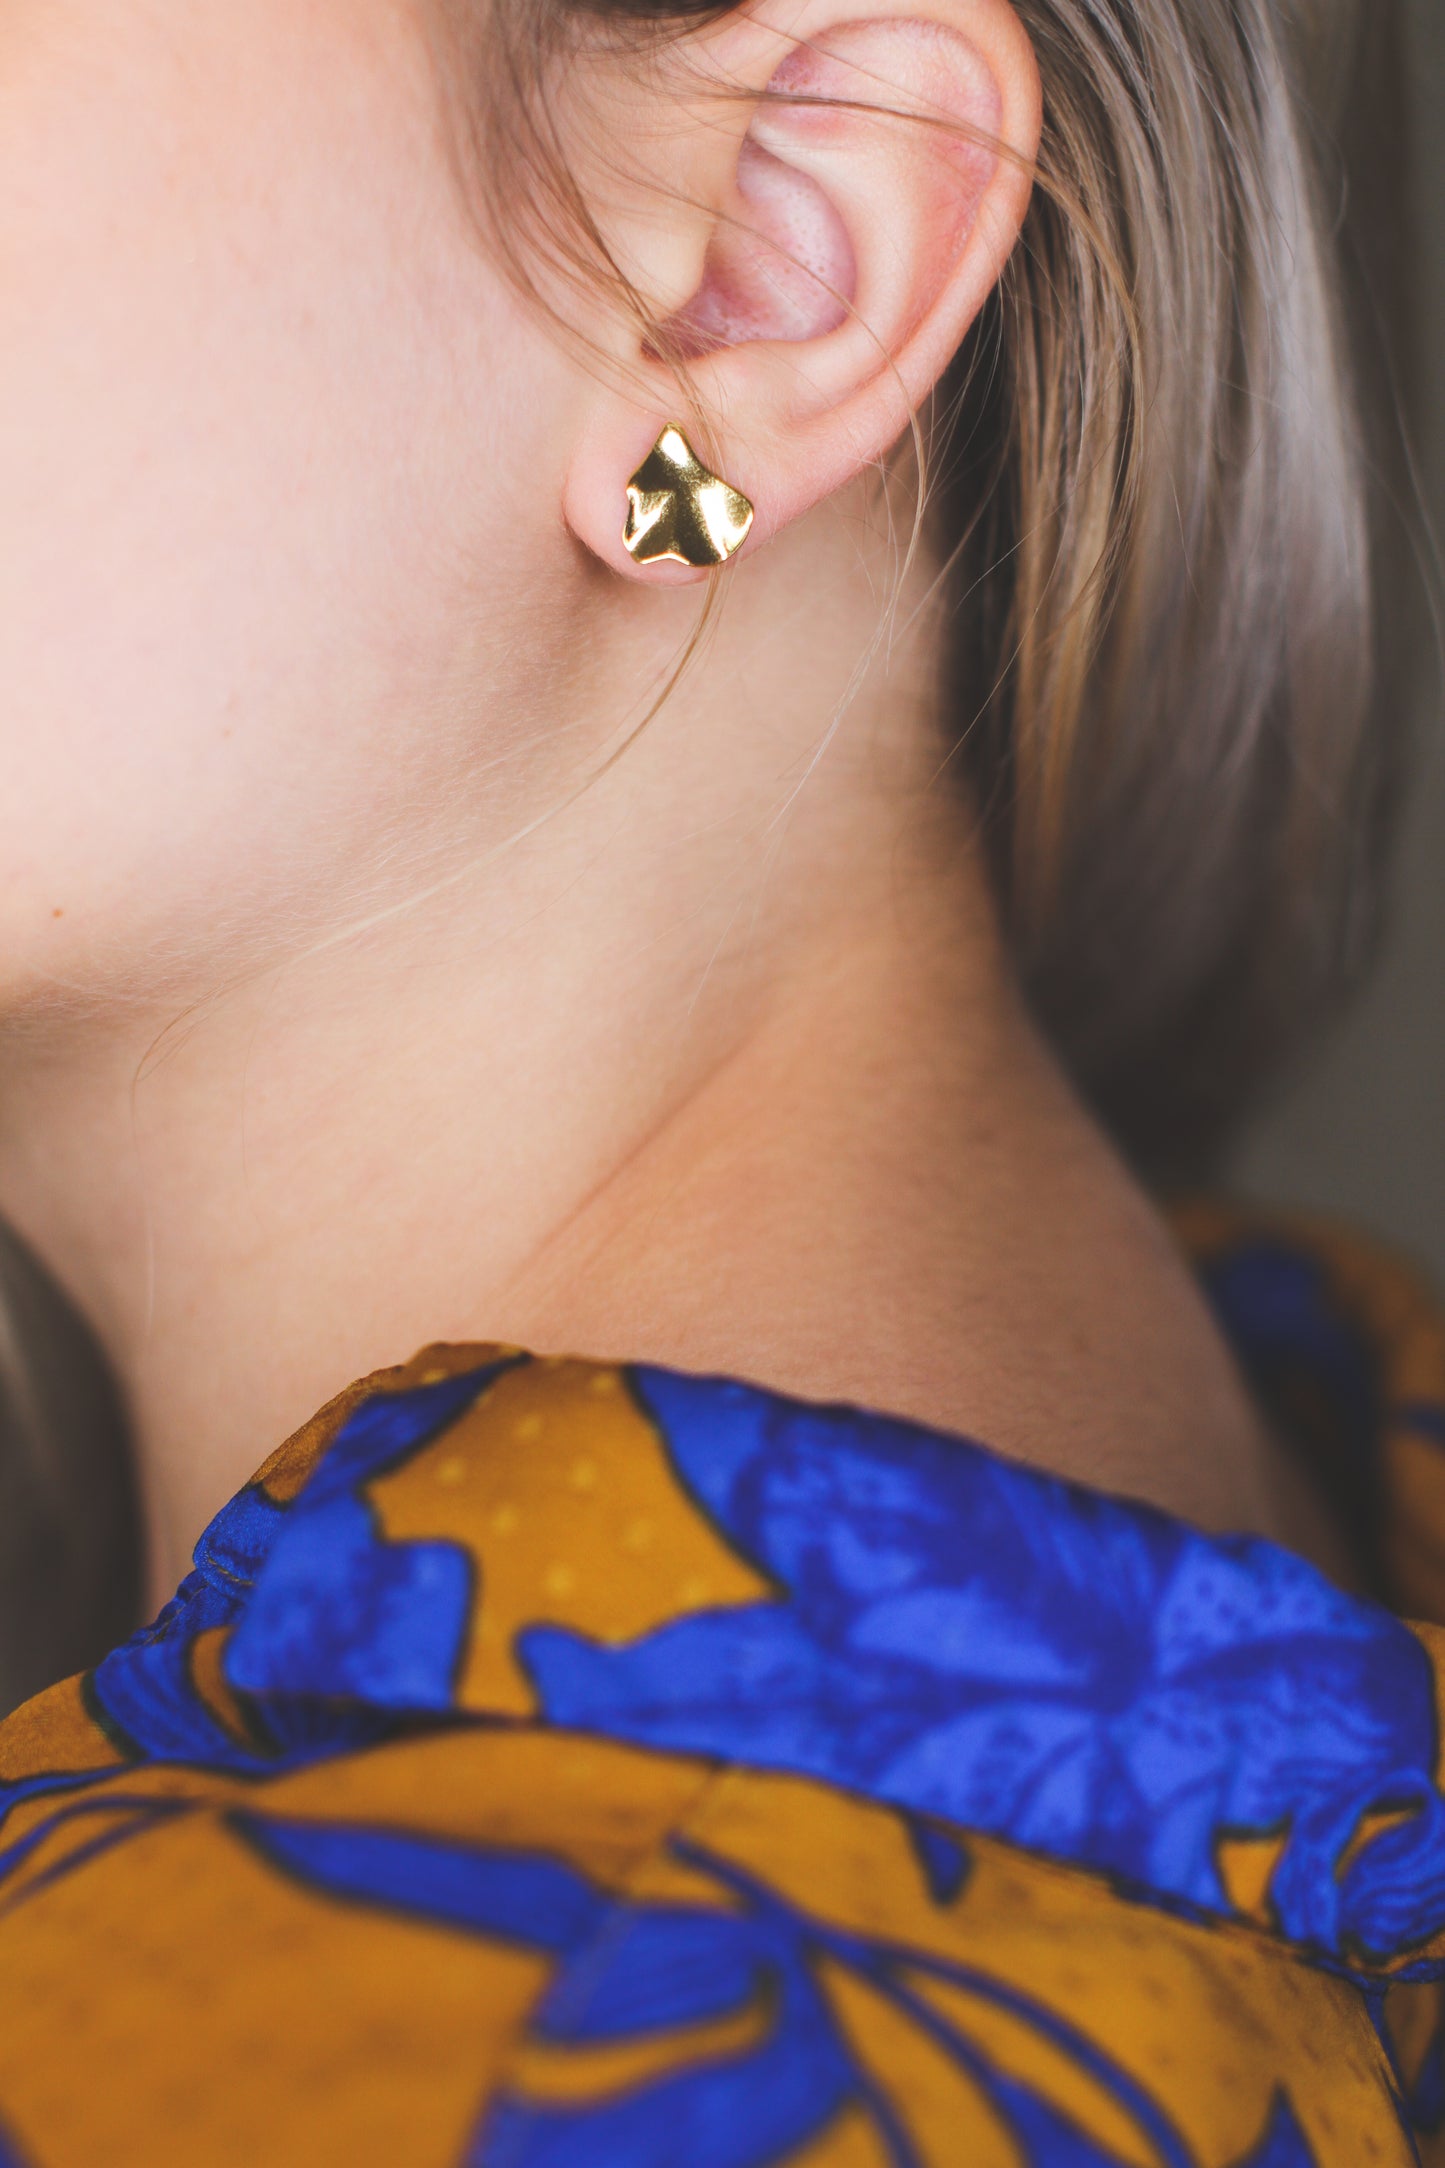 Space earrings